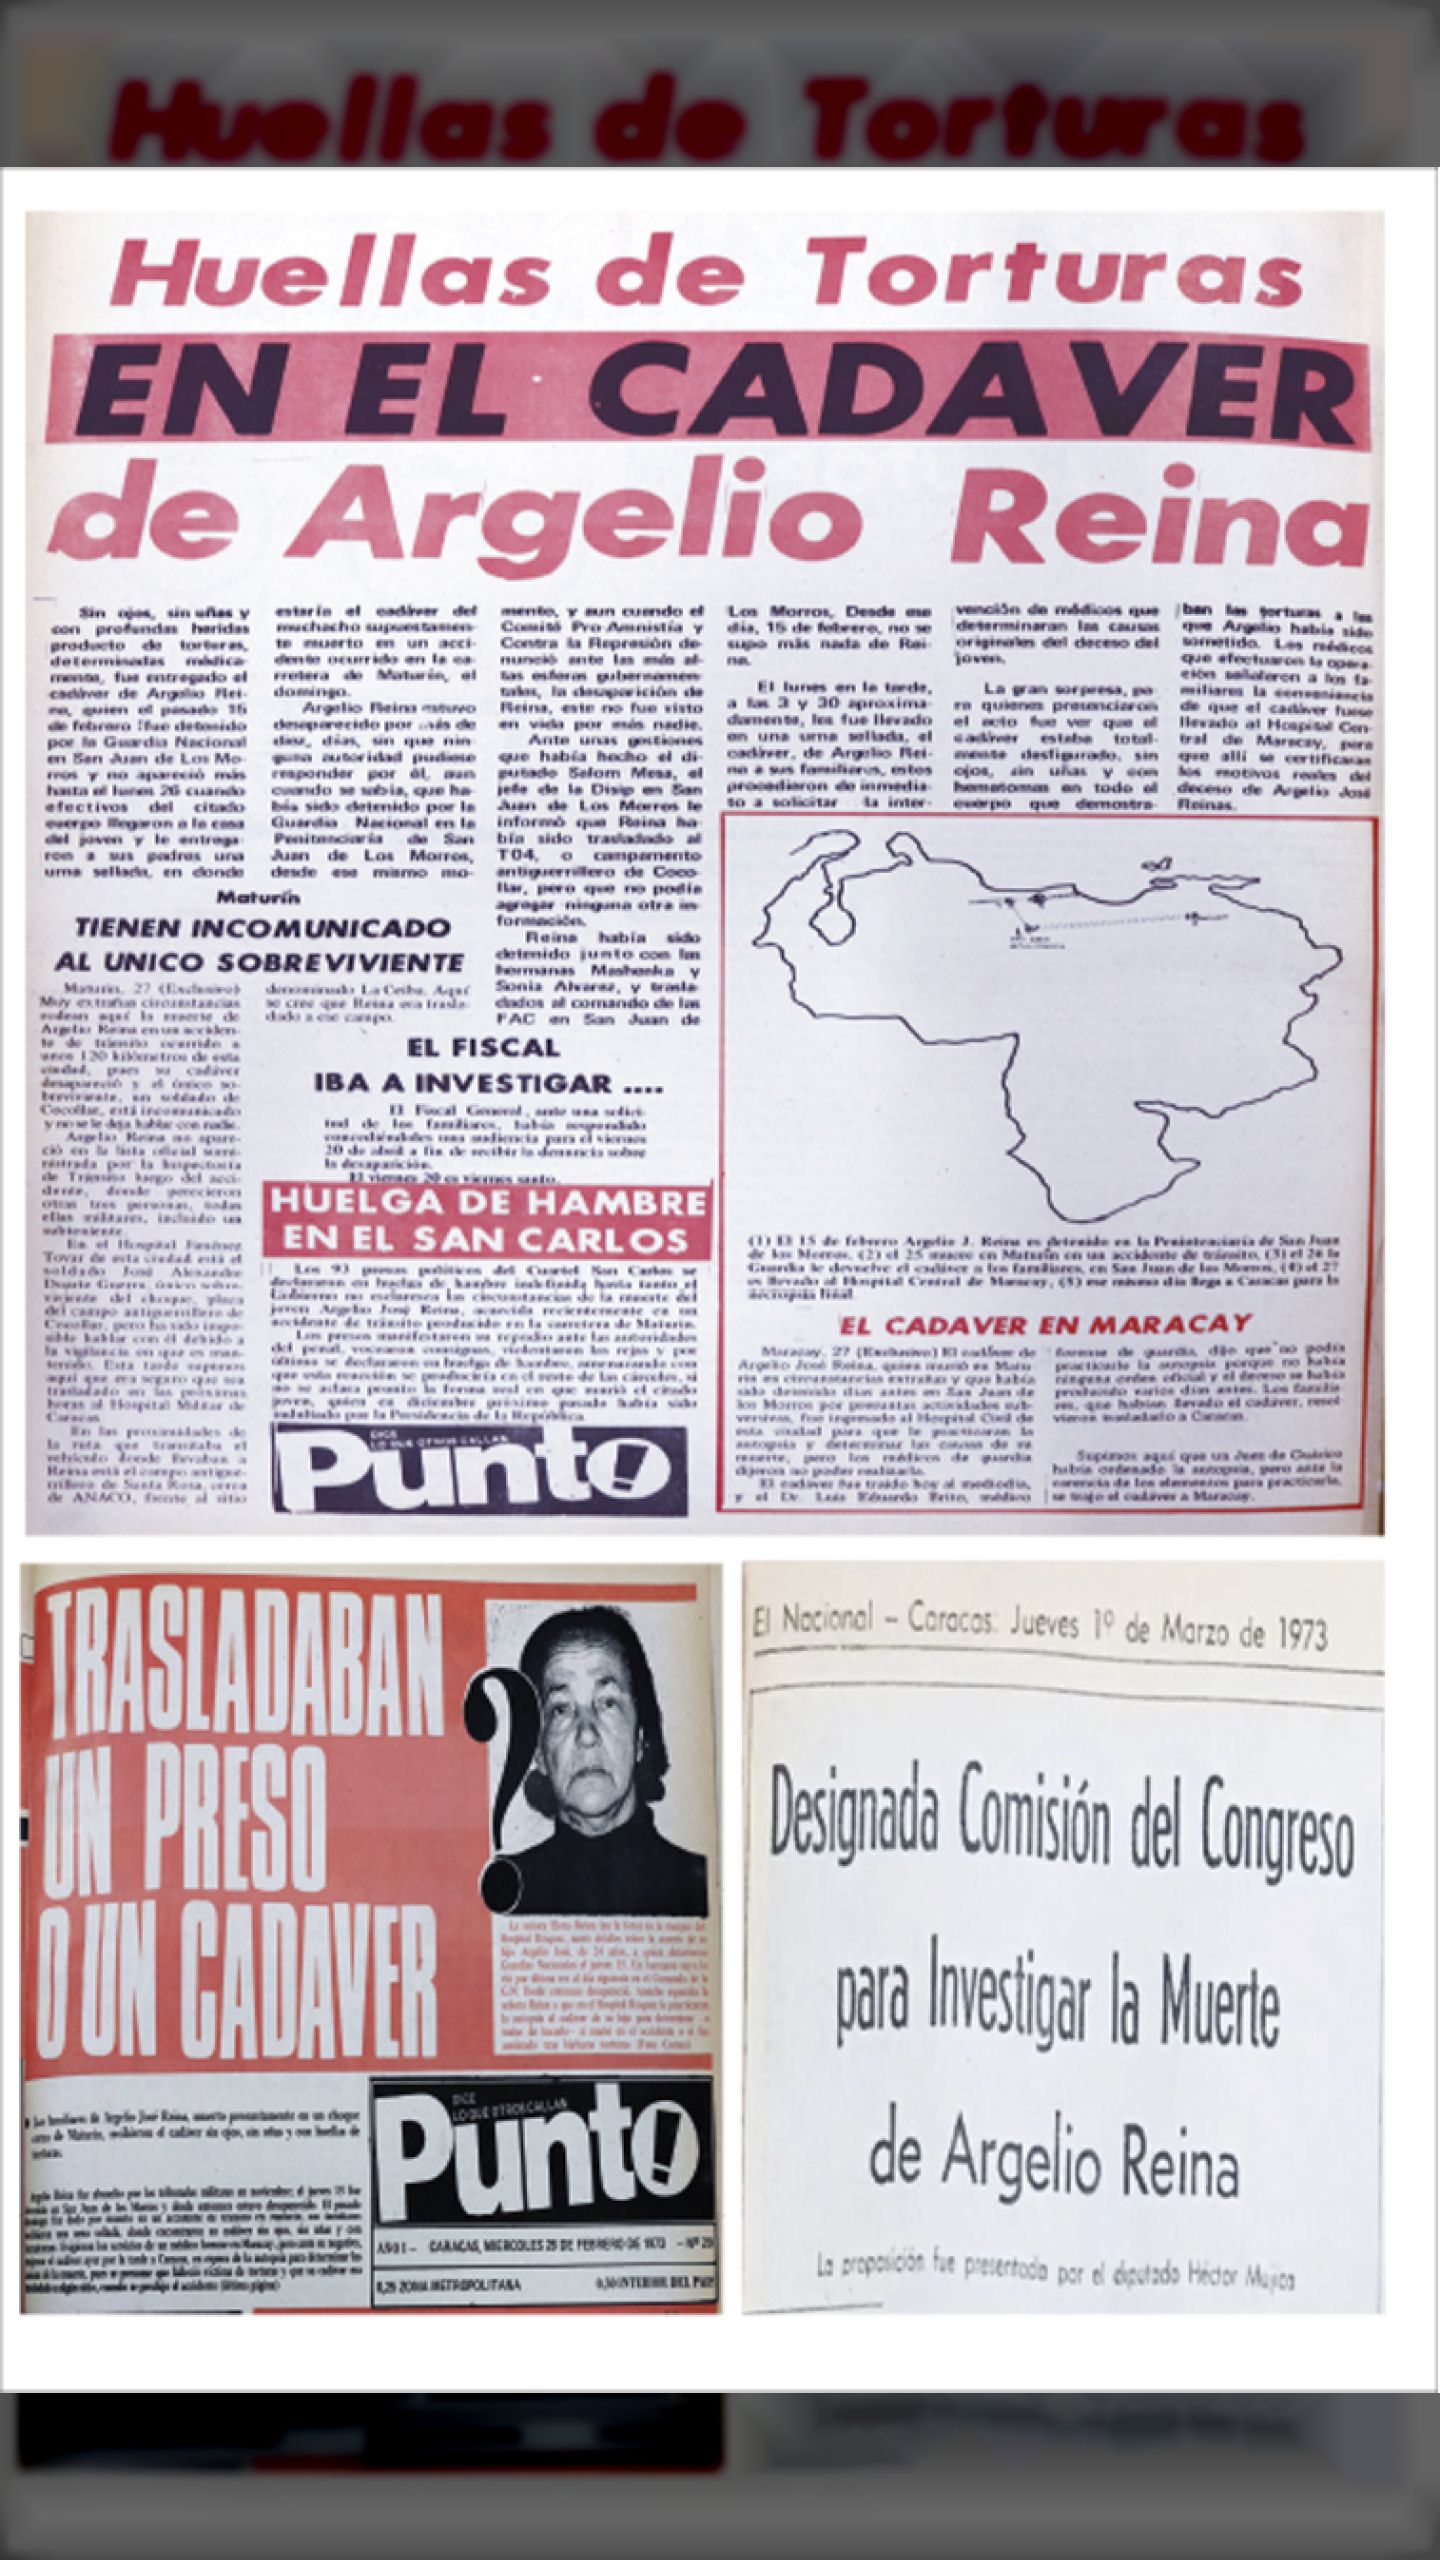 ¿TRASLADABAN UN PRESO O UN CADÁVER? HACE 50 AÑOS (Revista PUNTO!, 28 de FEBRERO 1973)